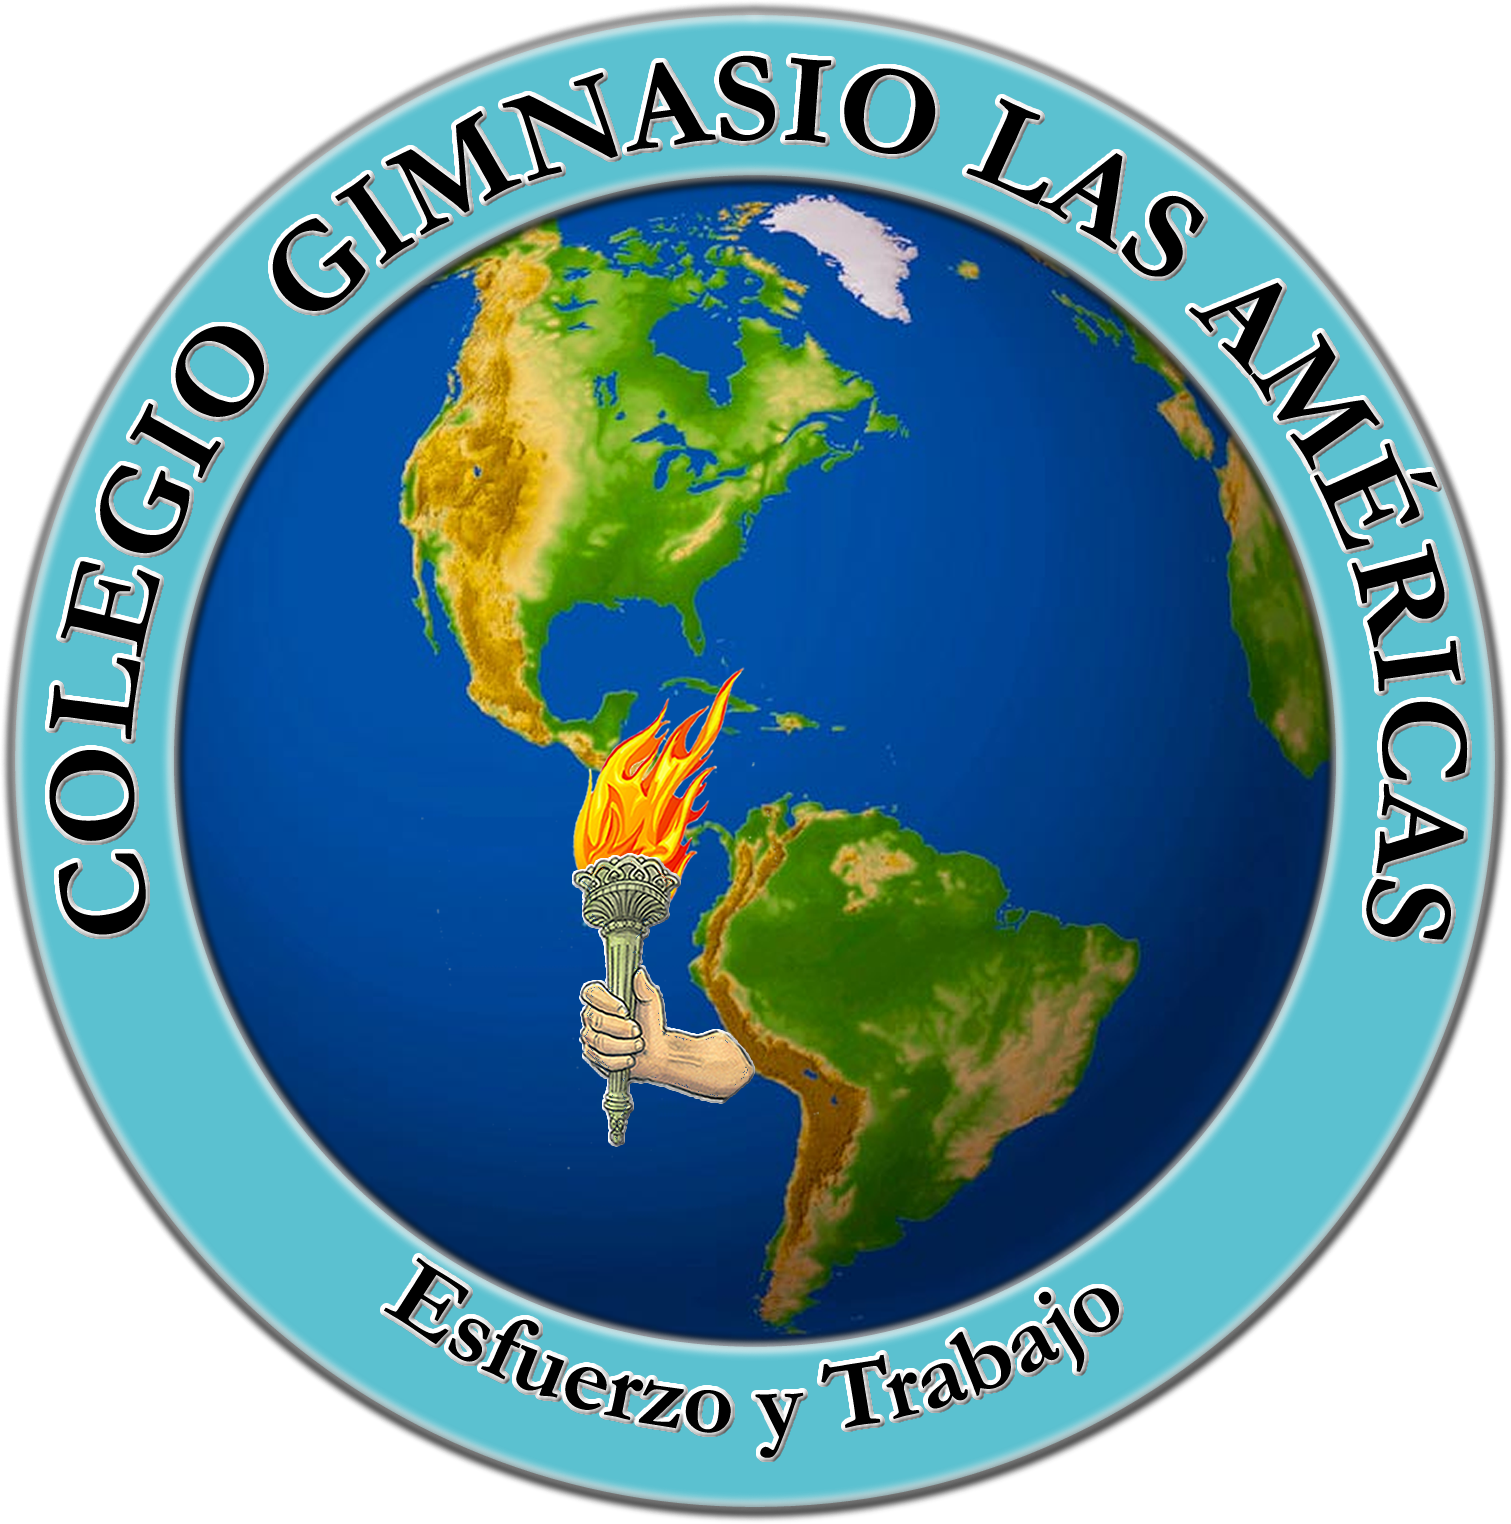 Colegio Gimnasio Las Americas